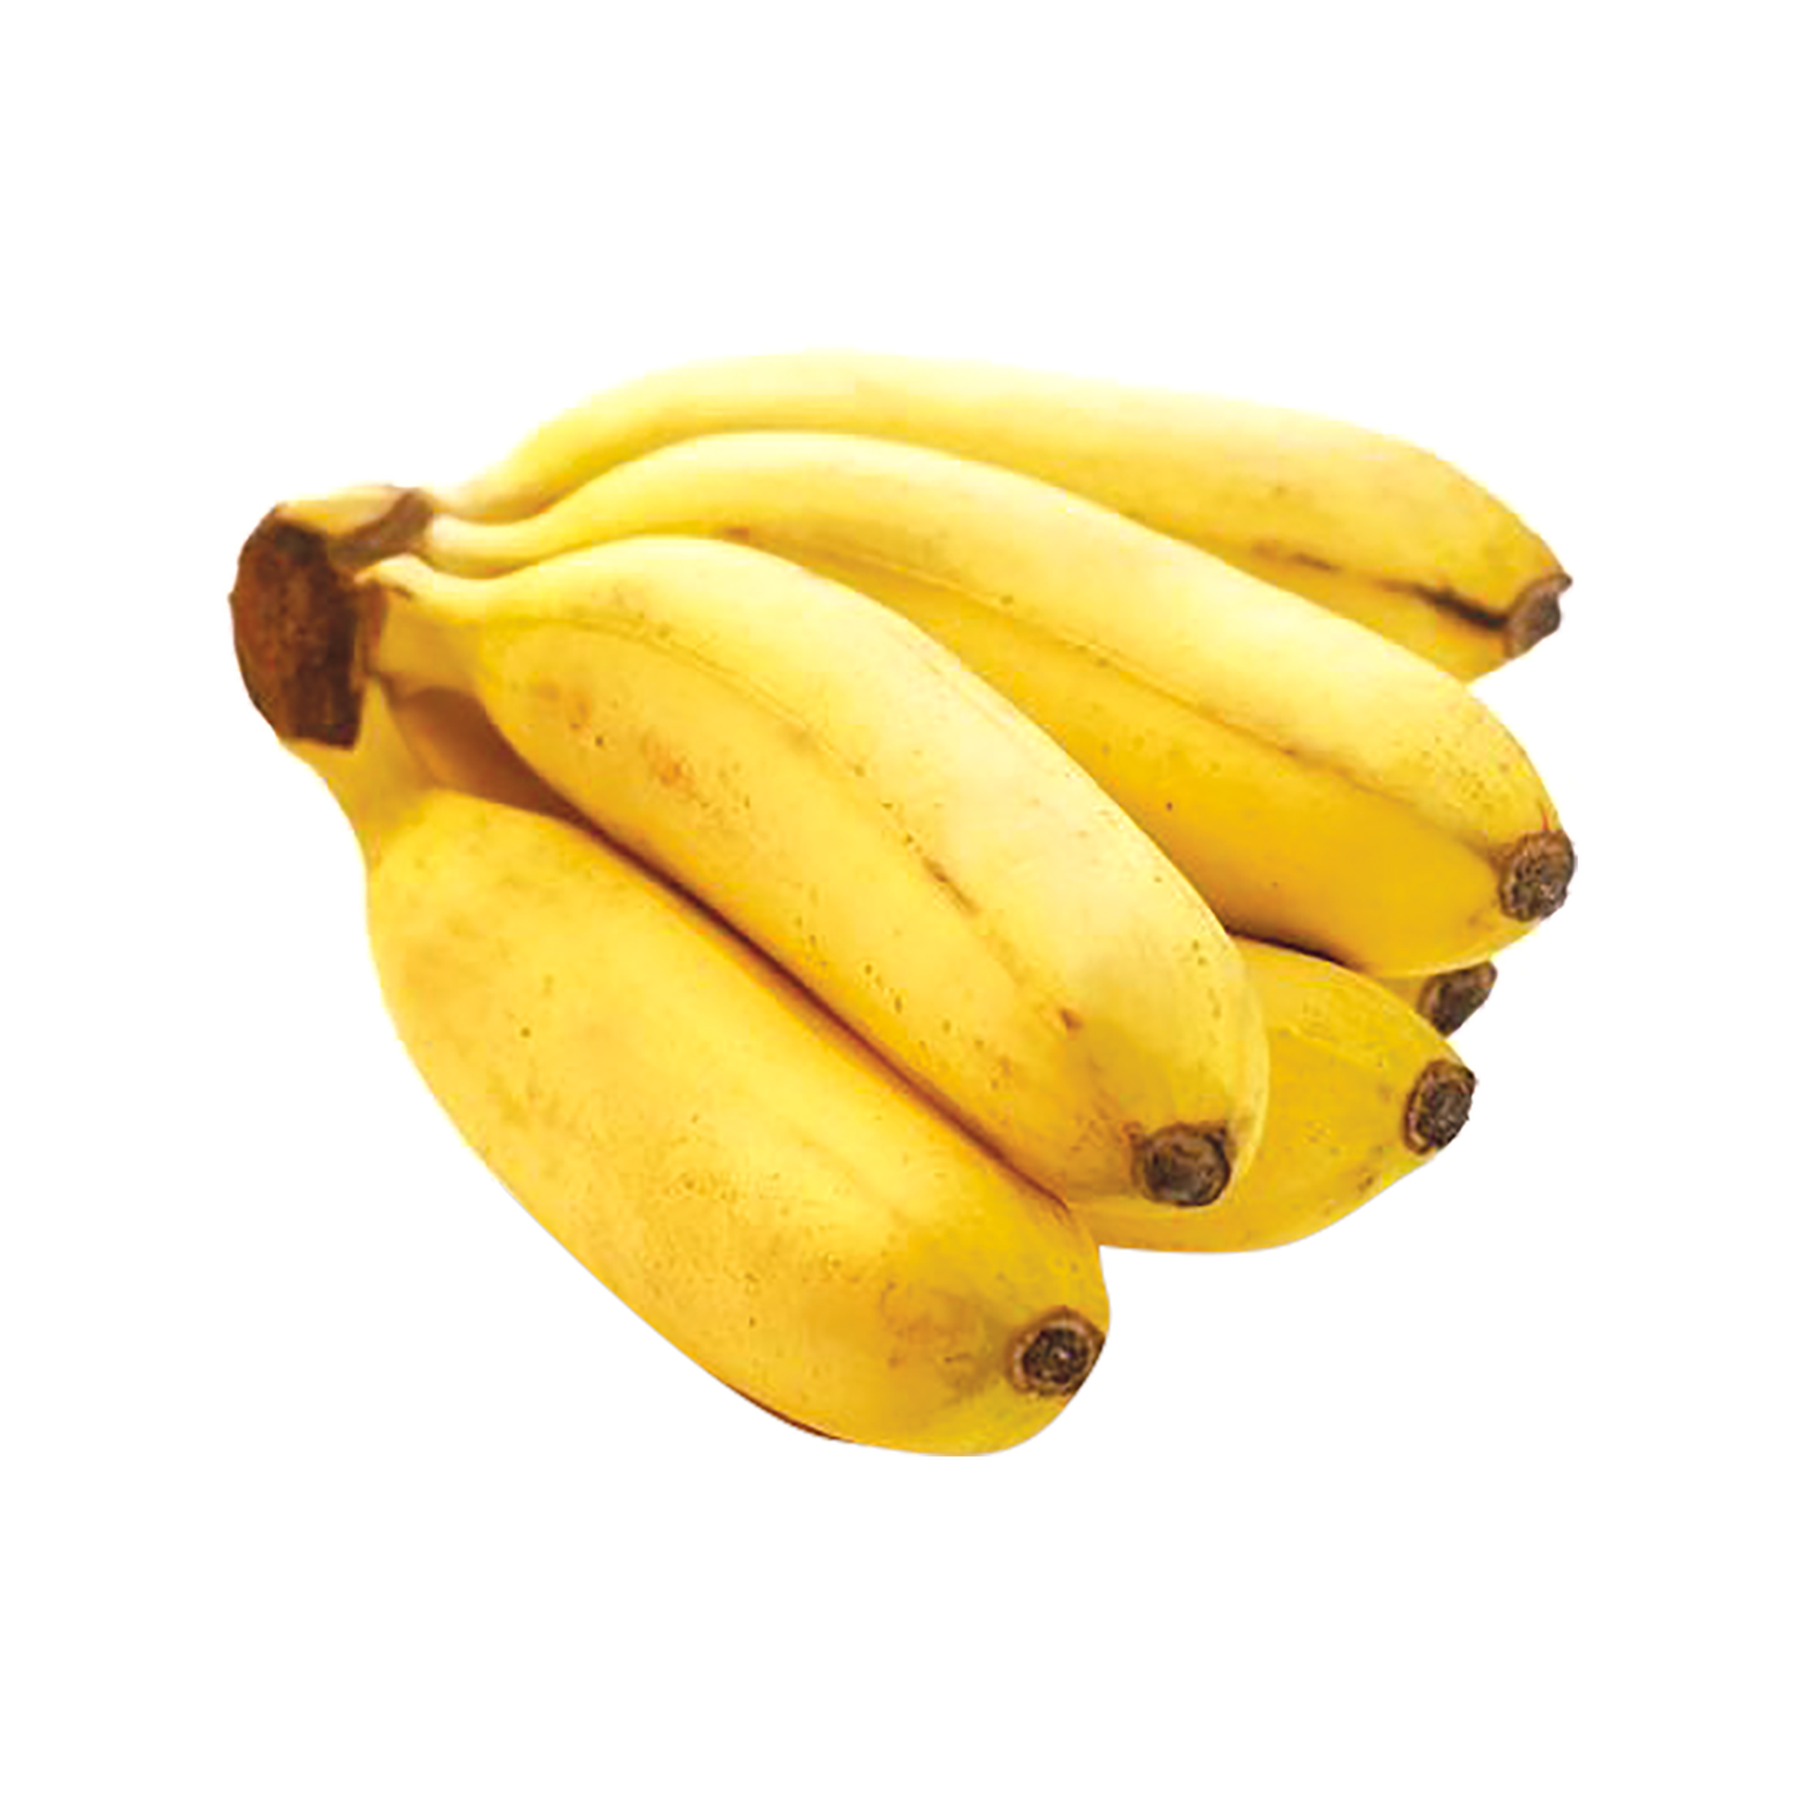 Banana Maçã - 1 unidade aprox. 100g